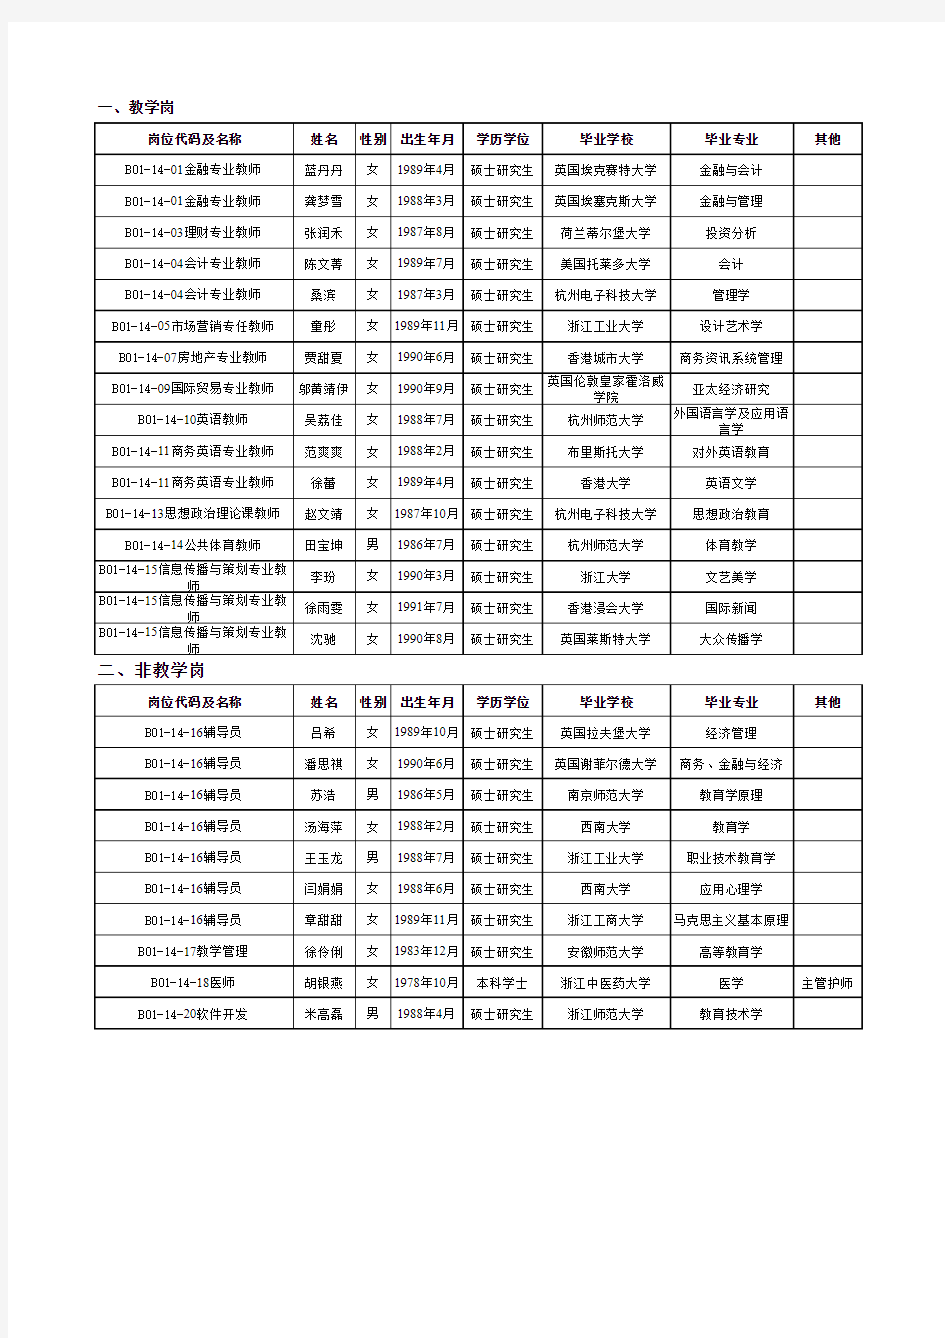 浙江金融职业学院拟聘人员公示26人2014.7.3